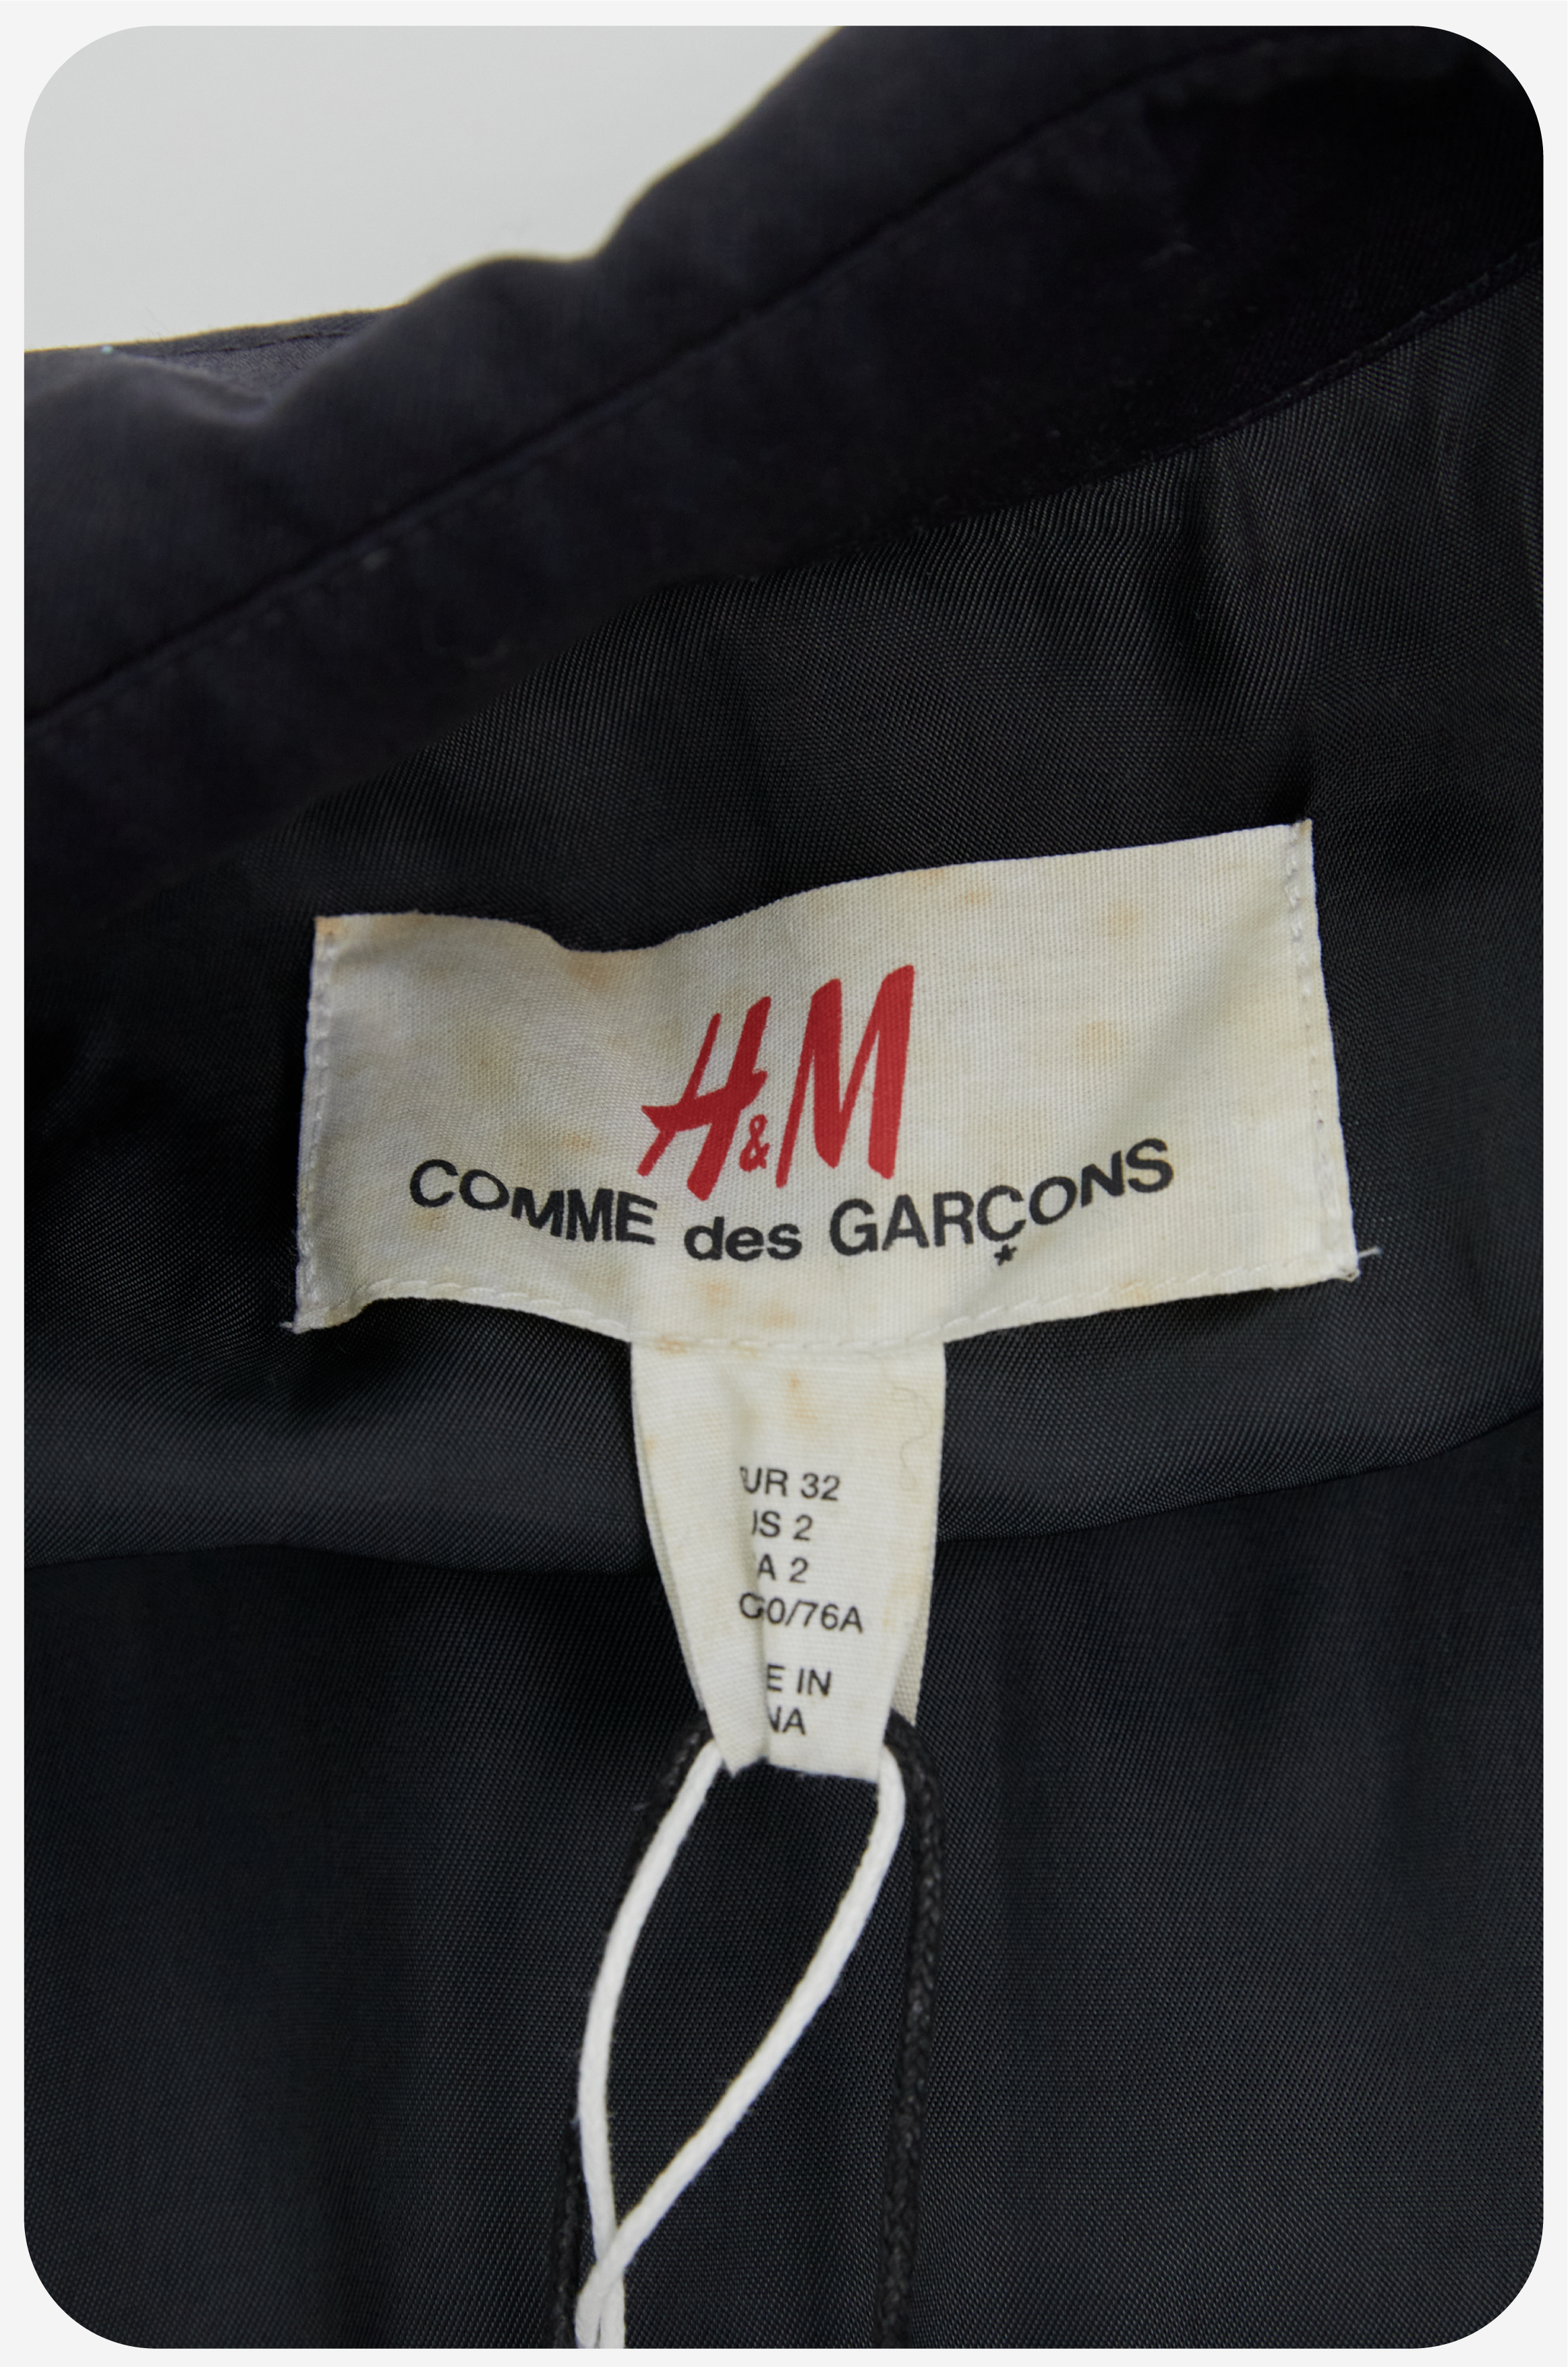 Archives Room: COMME DES GARÇONS  H&M Trench Coat